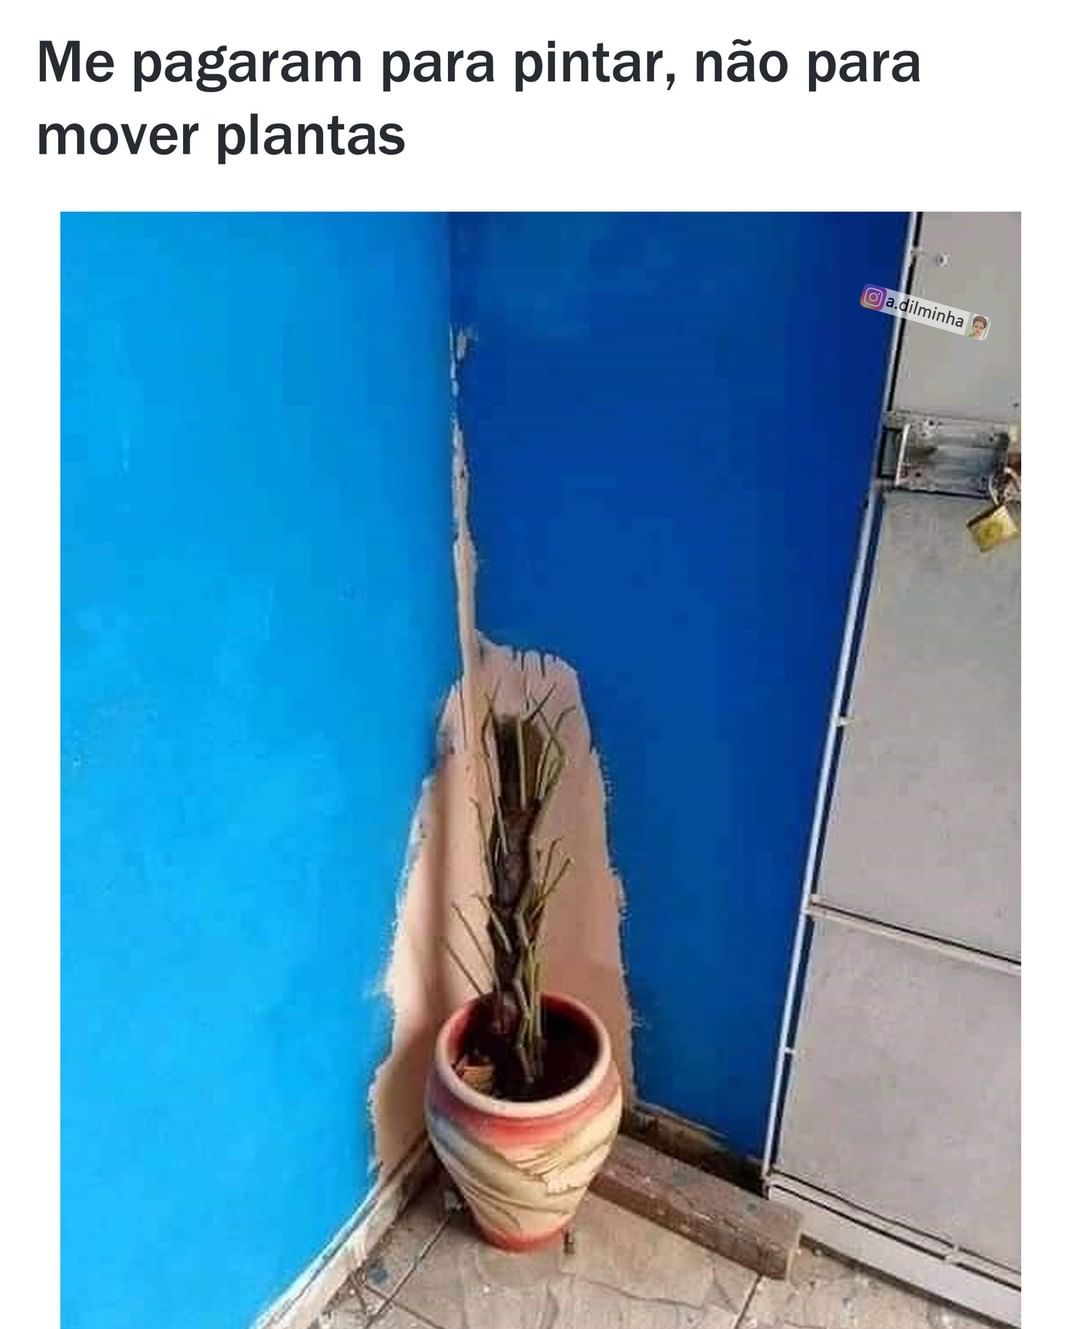 Me pagaram para pintar, não para mover plantas.